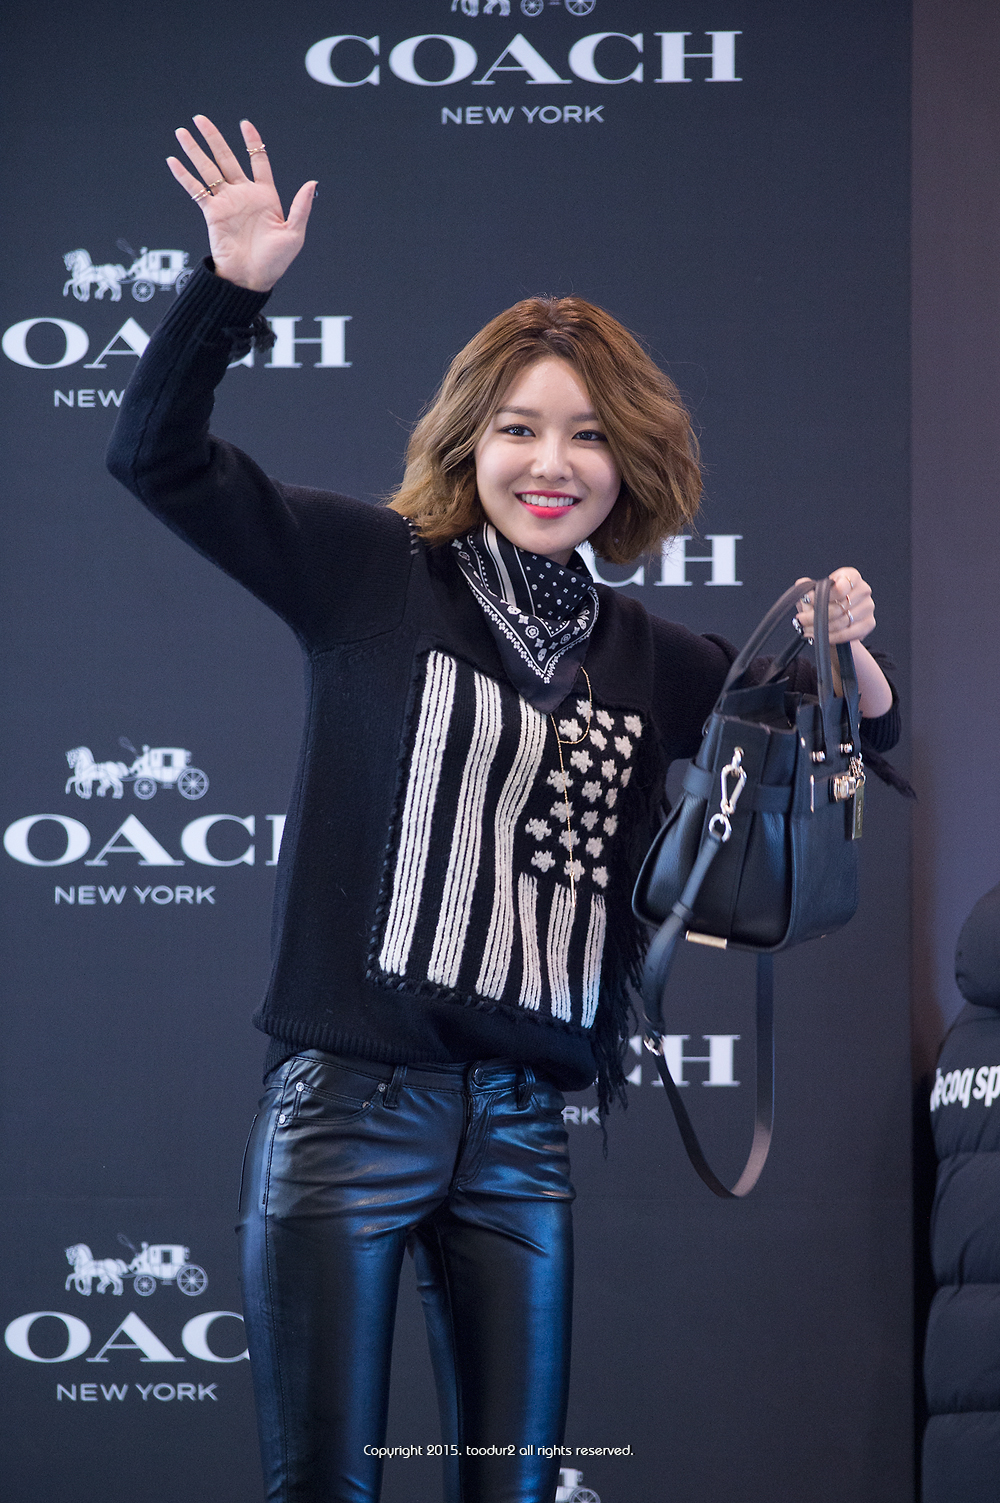  [PIC][27-11-2015]SooYoung tham dự buổi Fansign cho thương hiệu "COACH" tại Lotte Department Store Busan vào trưa nay 232C944B565923470C520B